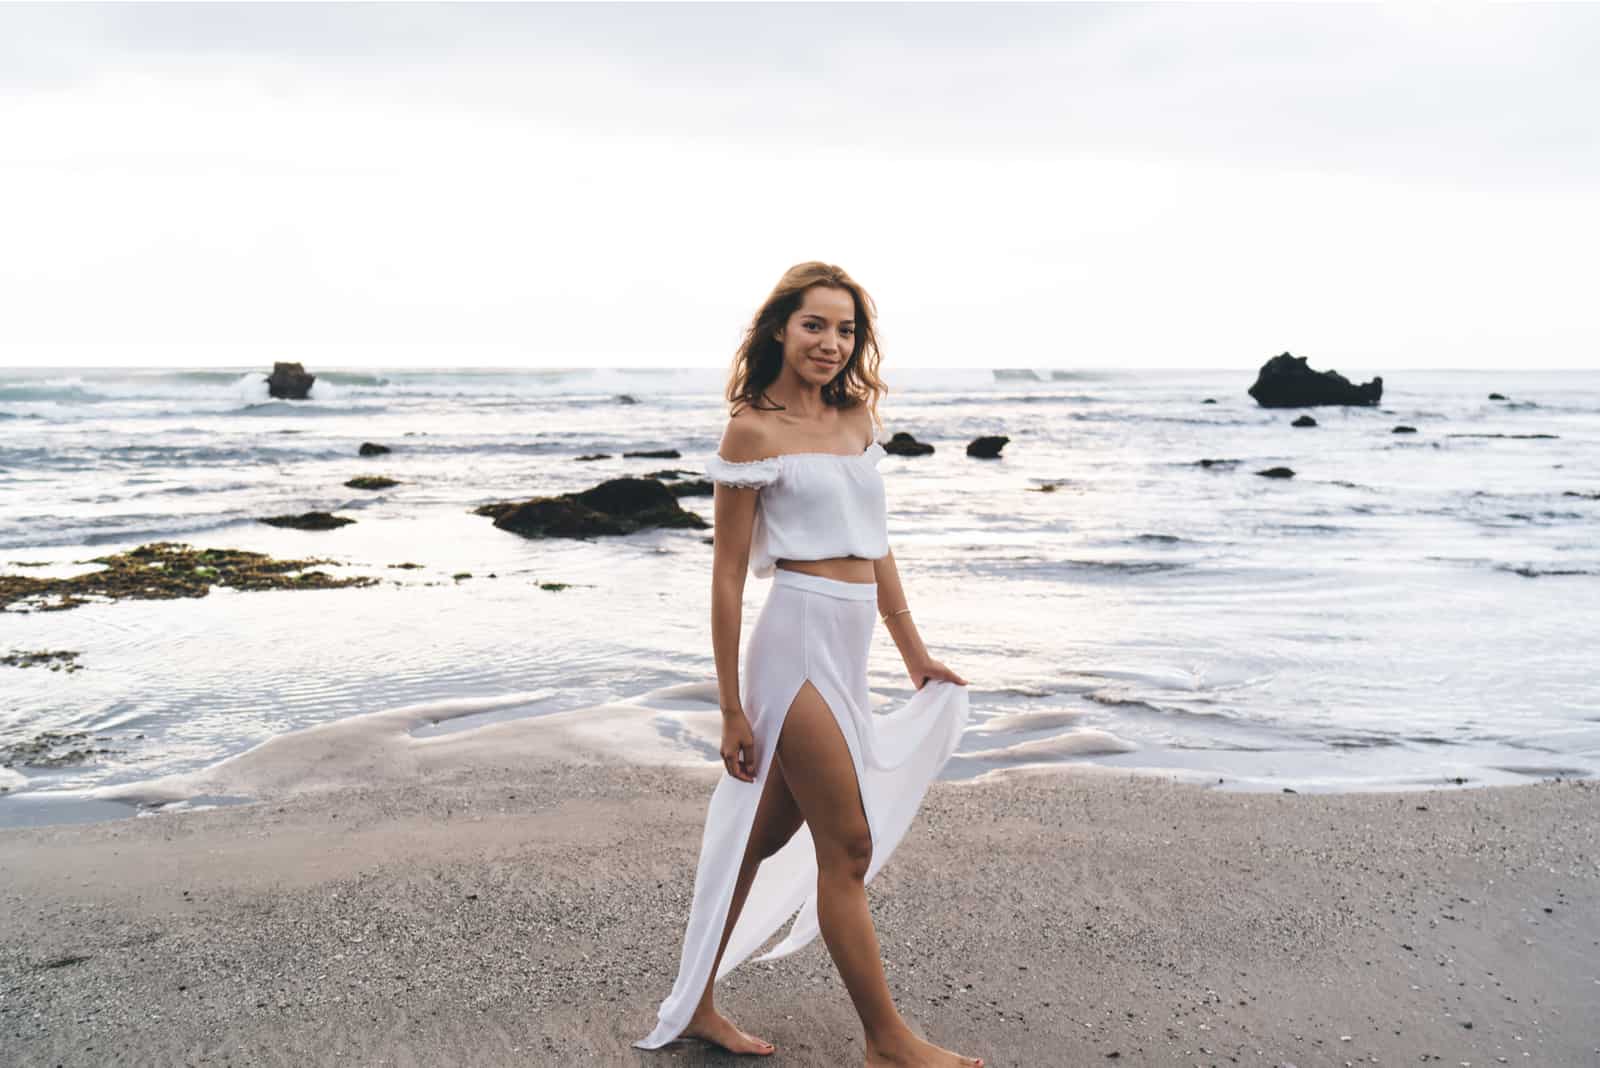 a woman in a white dress walks the beach